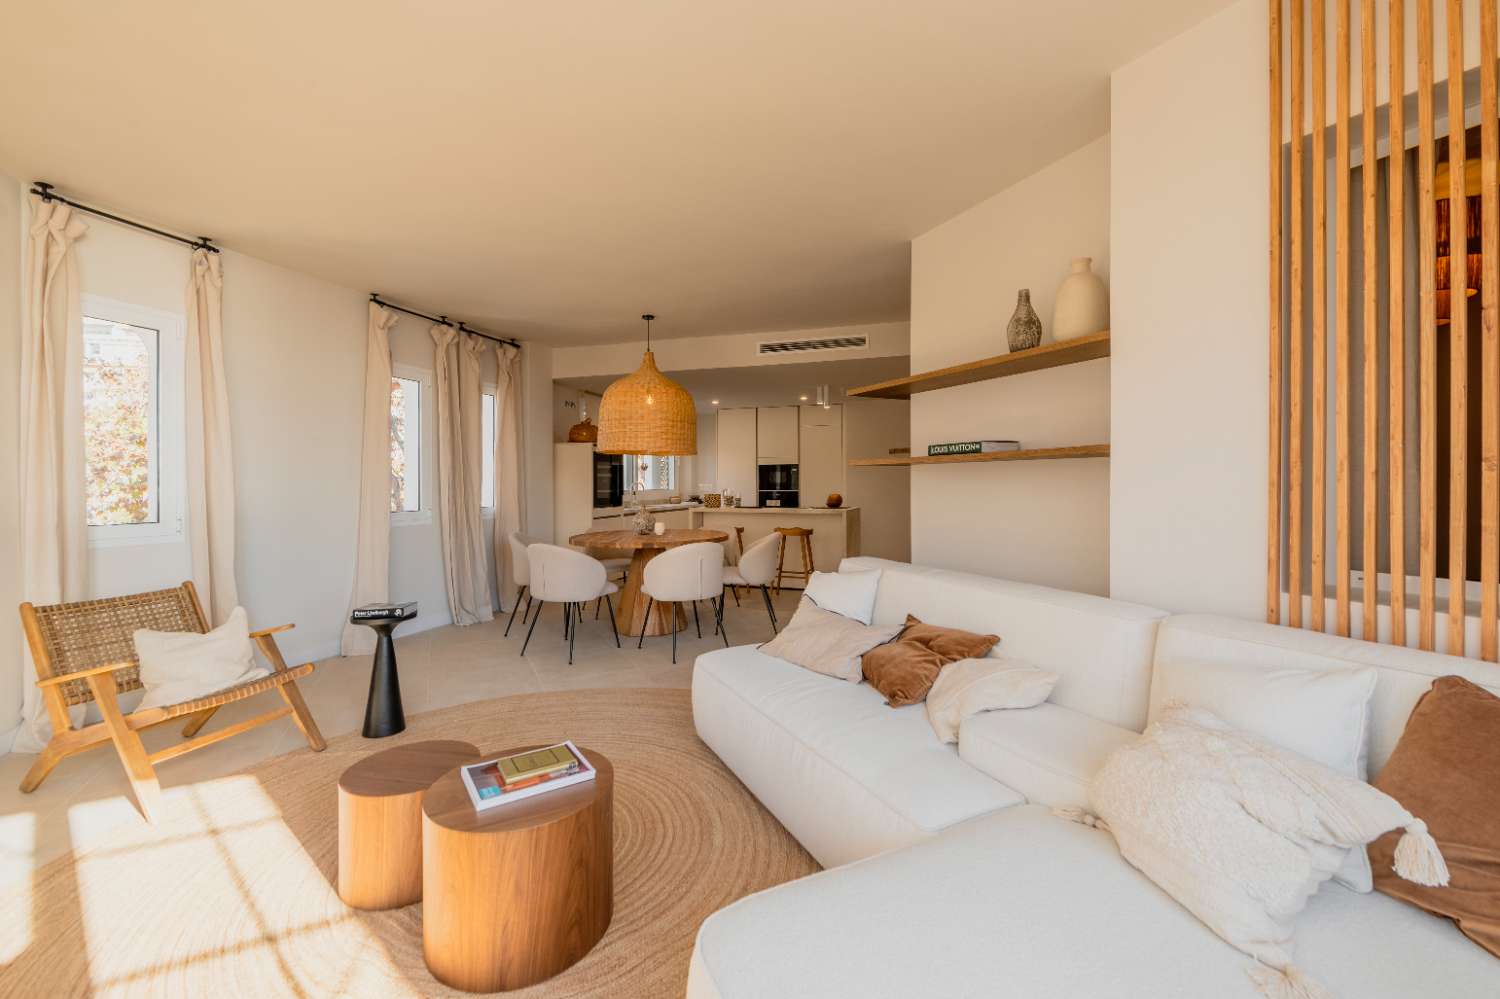 Precioso piso reformado con vistas del mar en Marbella centro